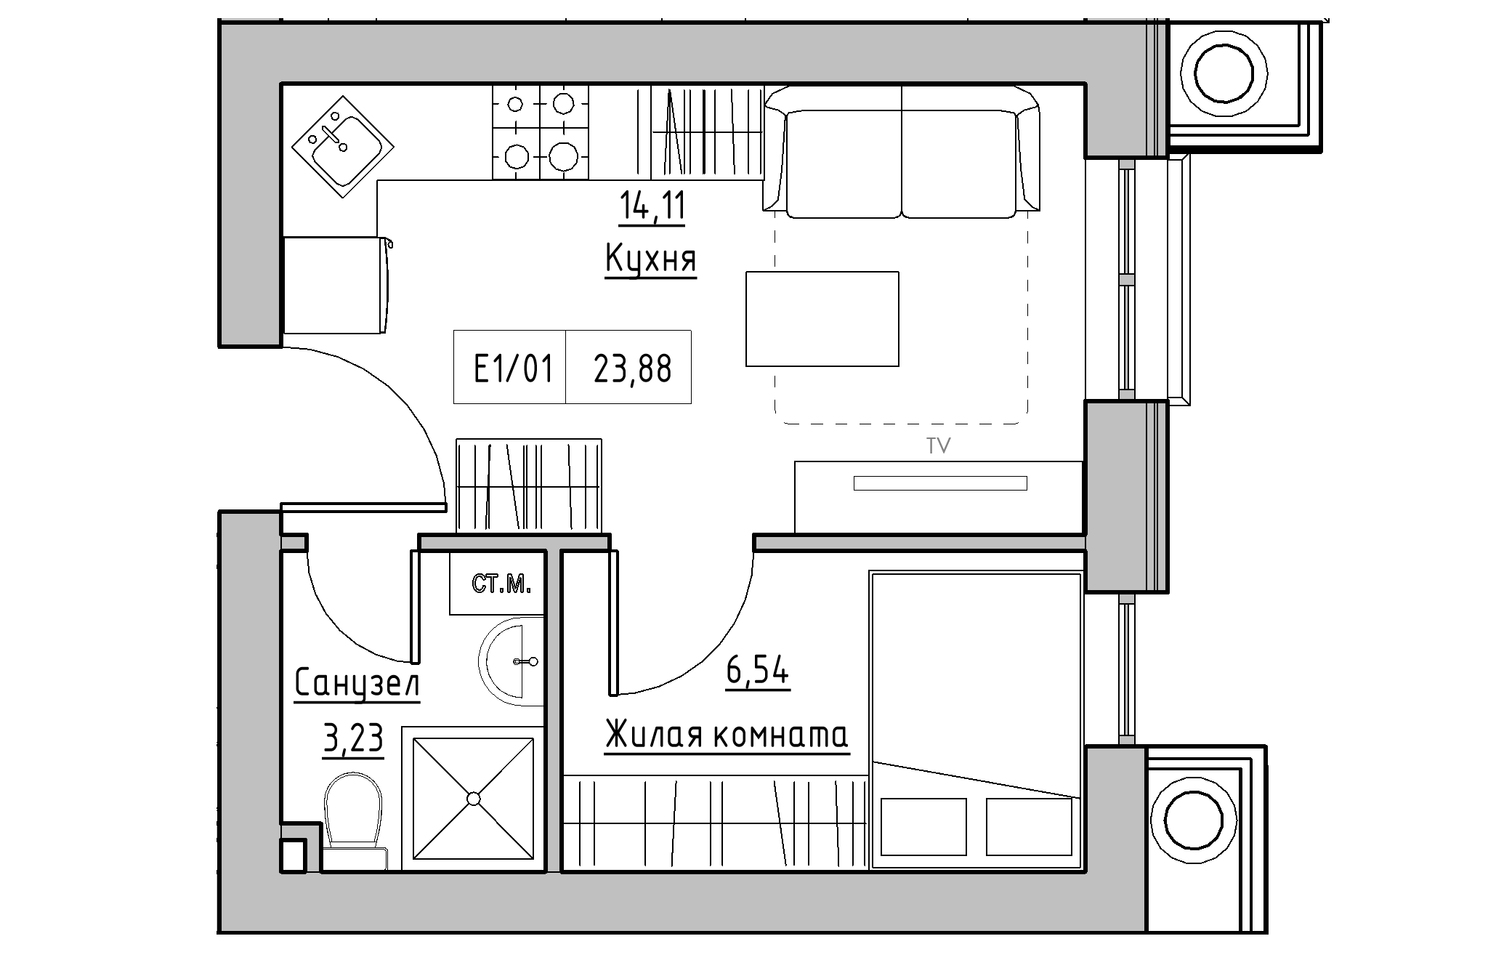 Планування 1-к квартира площею 23.88м2, KS-010-05/0014.